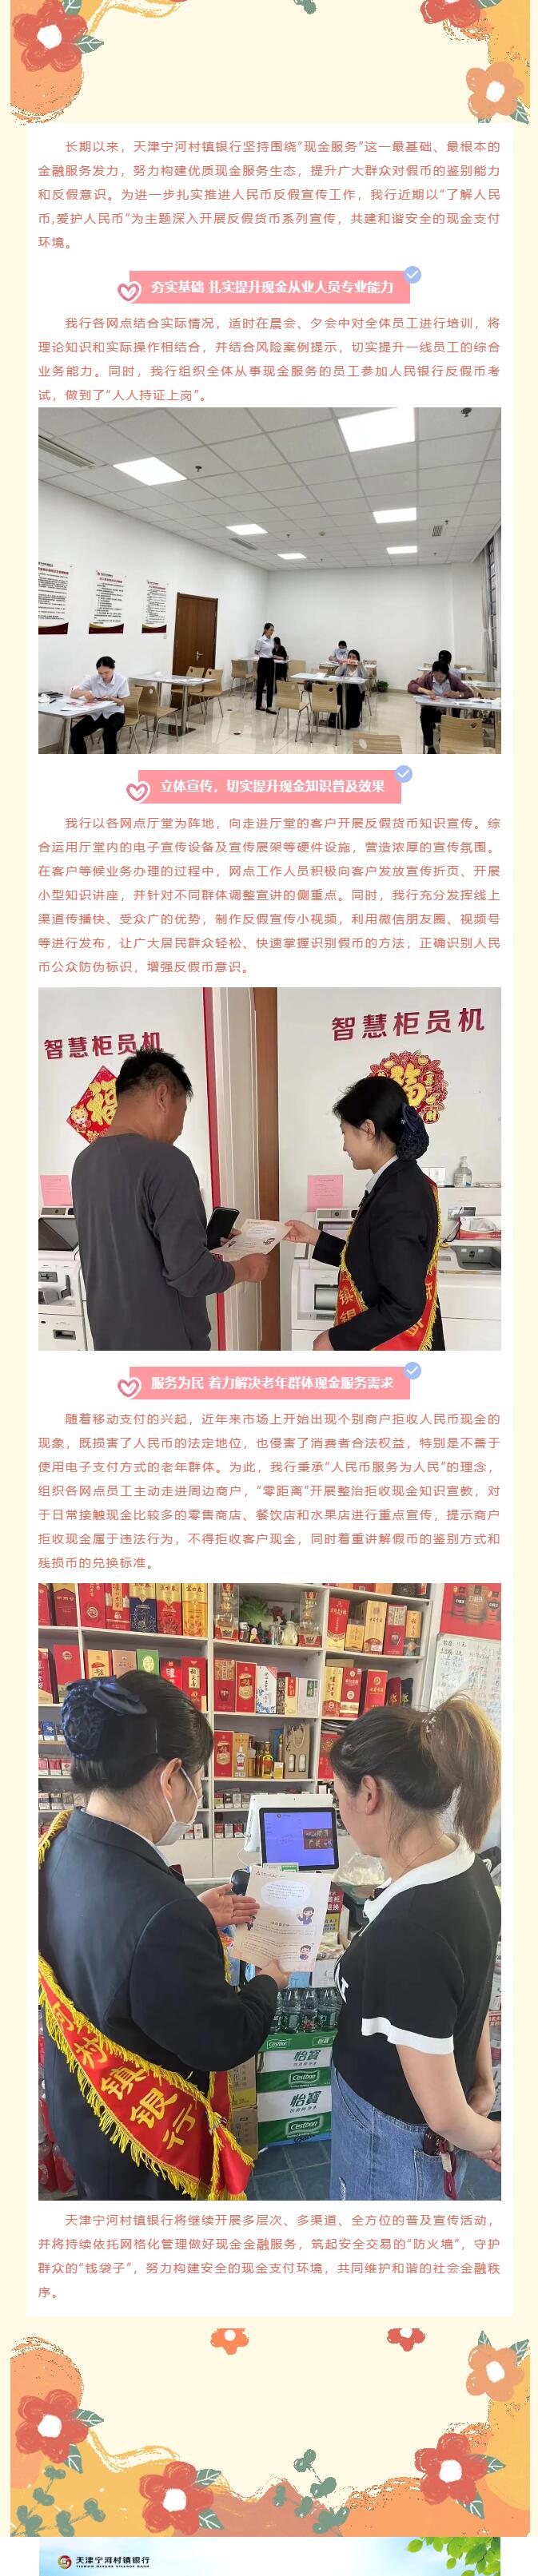 与民同心 为您守护 反假币知识宣传天津宁河村镇银行在行动